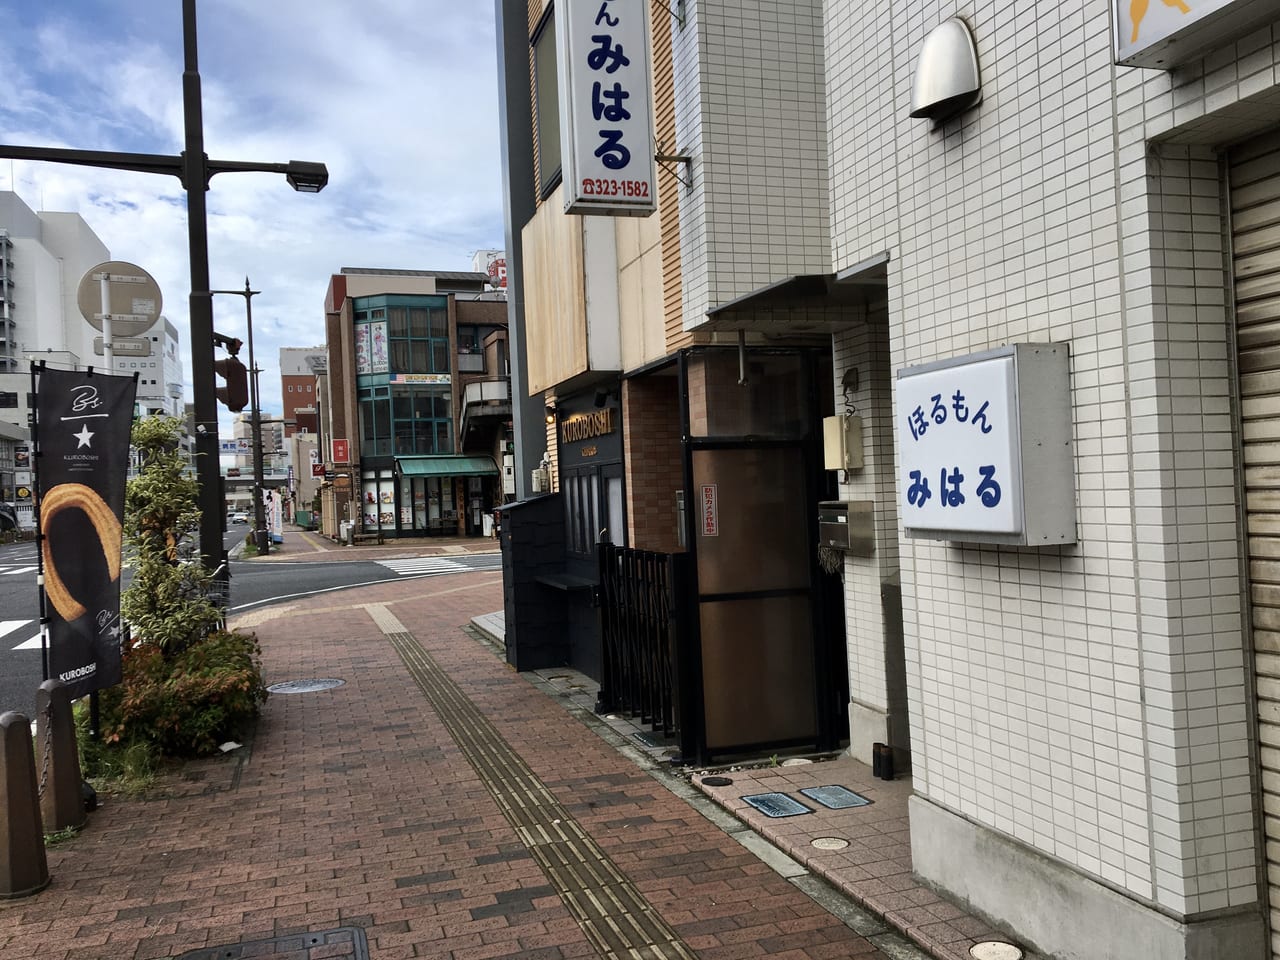 高崎市 栃木発のチュロス専門店 Kuroboshi が通町にオープンしています 号外net 高崎市